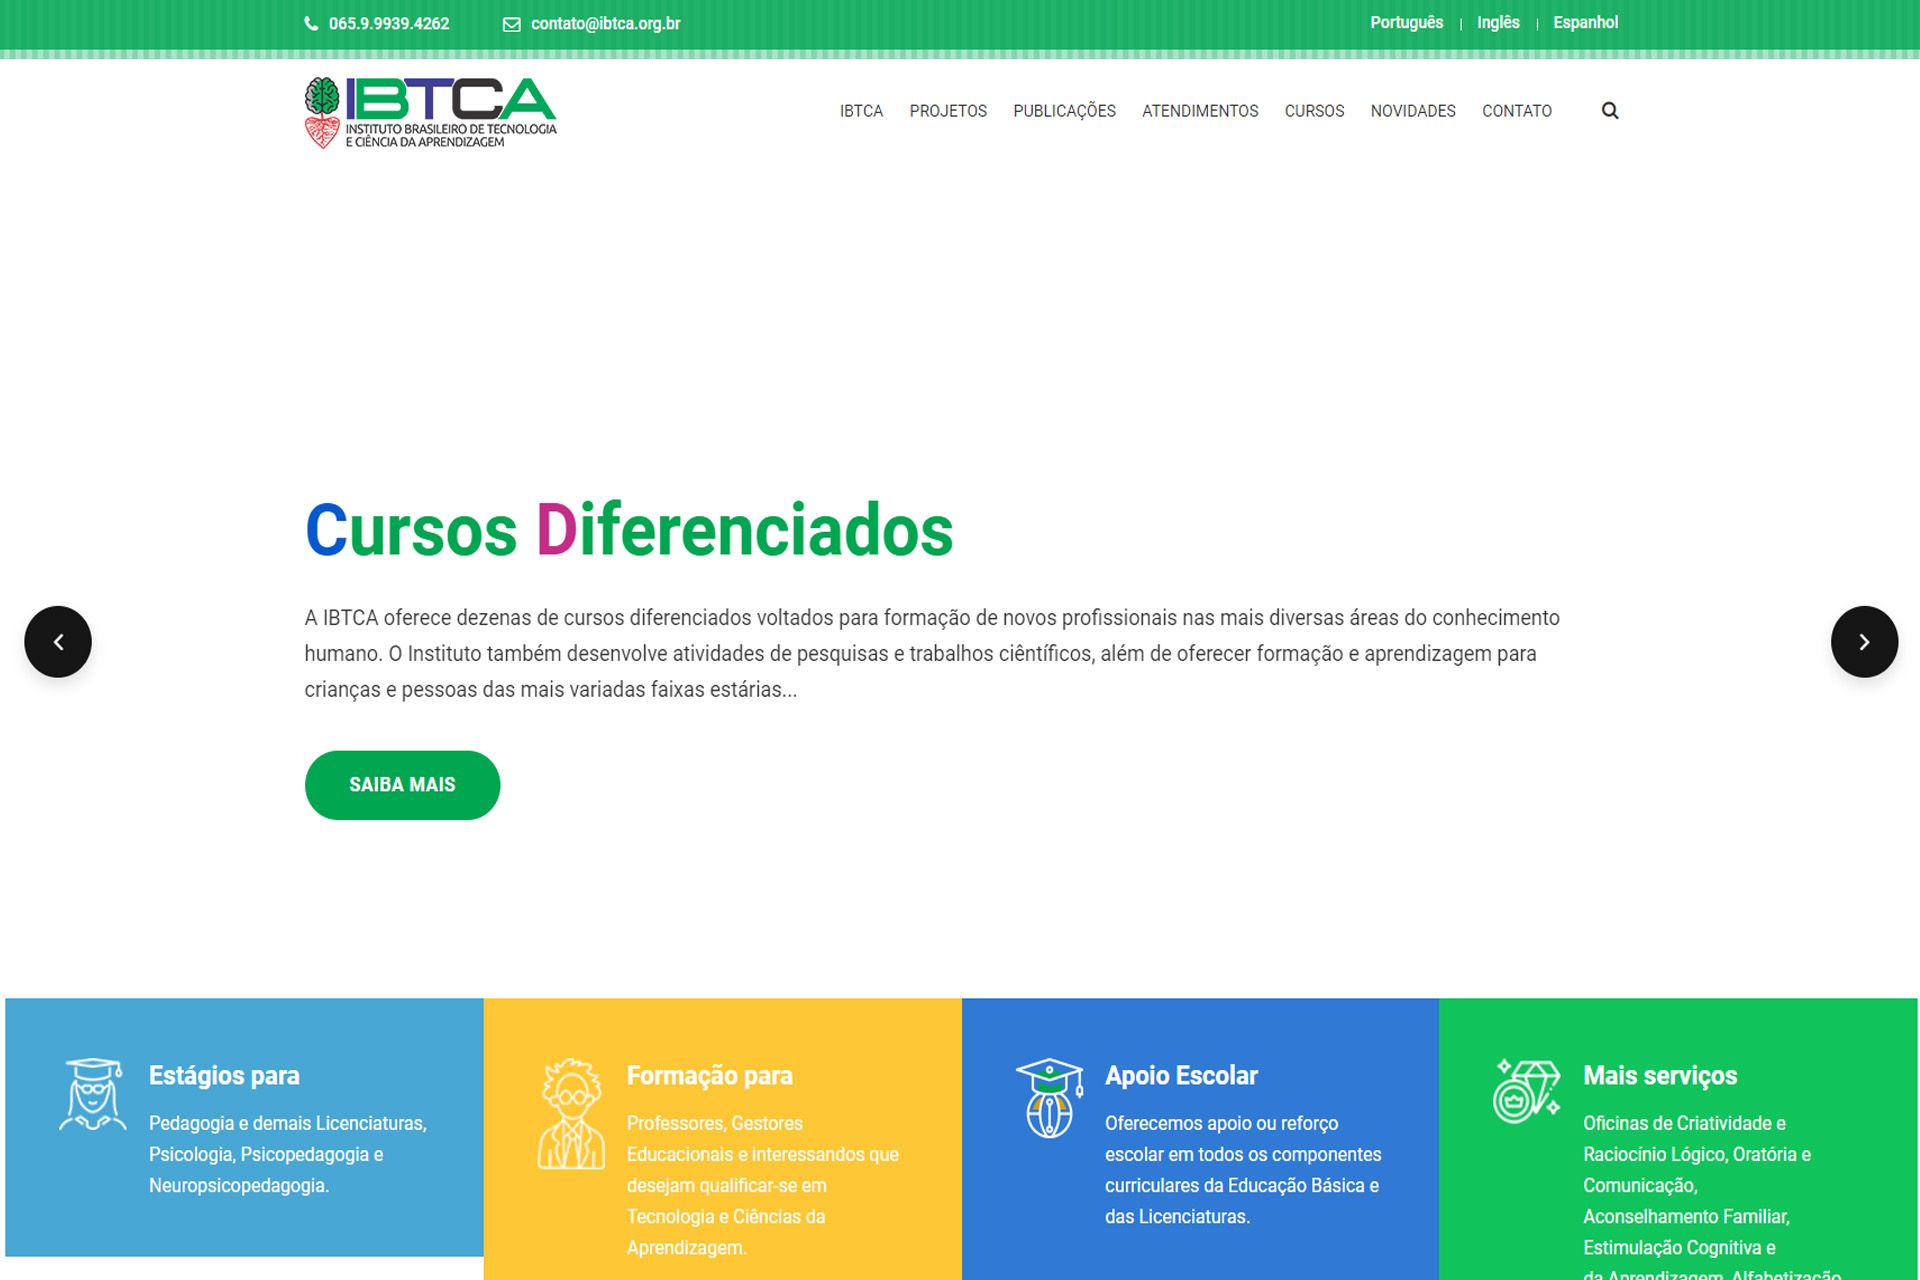 IBTCA - Instituto Brasileiro de Tecnologia e Ciência da Aprendizagem